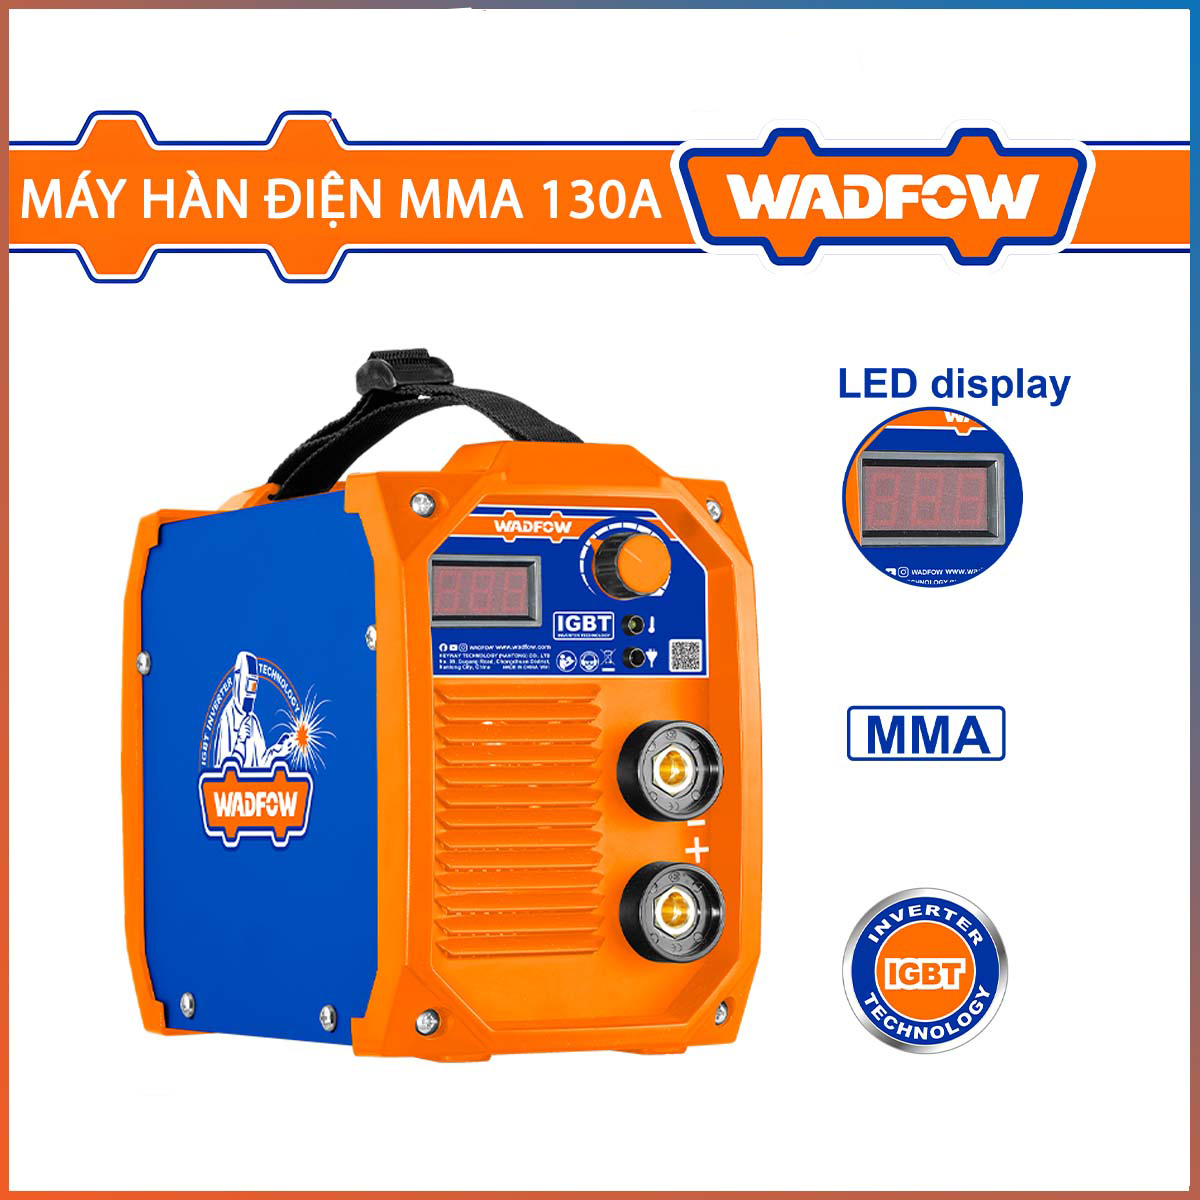 Hình ảnh 2 của mặt hàng Máy hàn điện tử MMA 130A (màn hình LED) Wadfow WWD11301